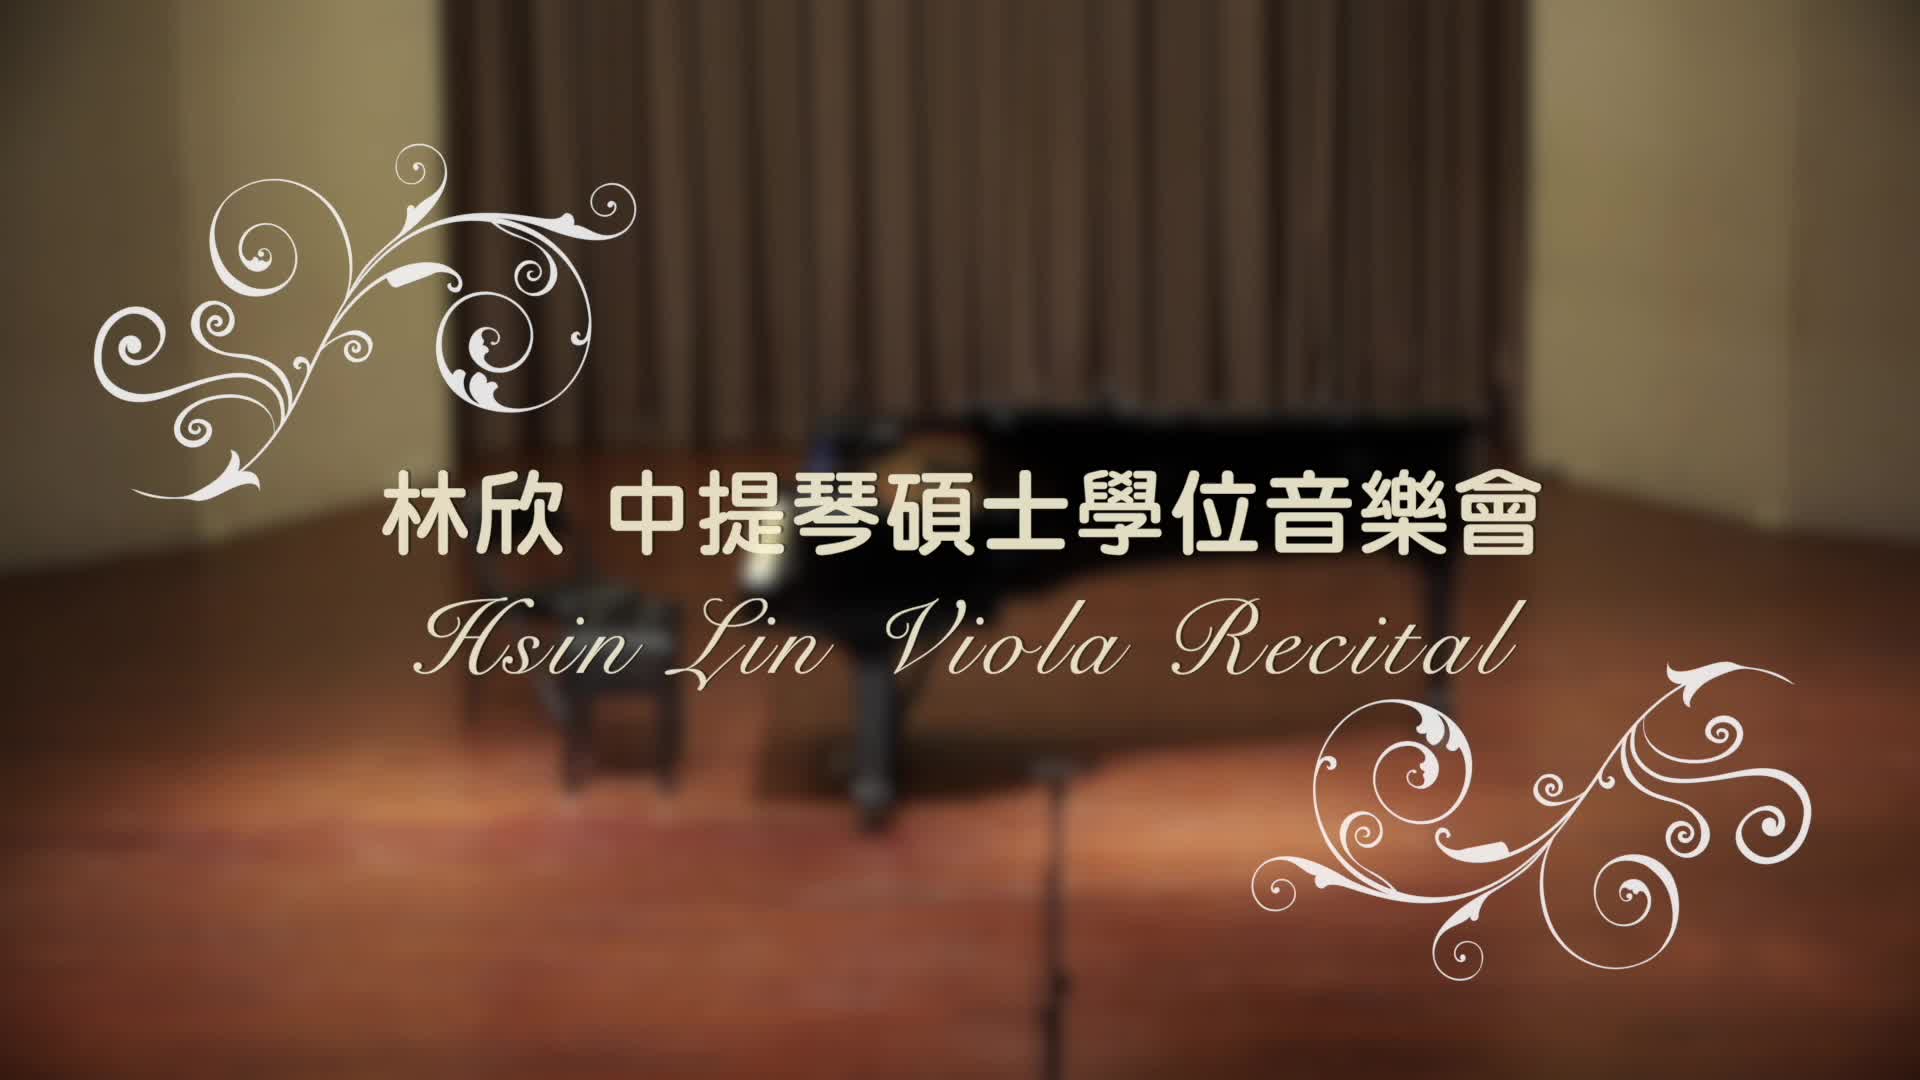 林欣中提琴畢業獨奏會(上)示意圖